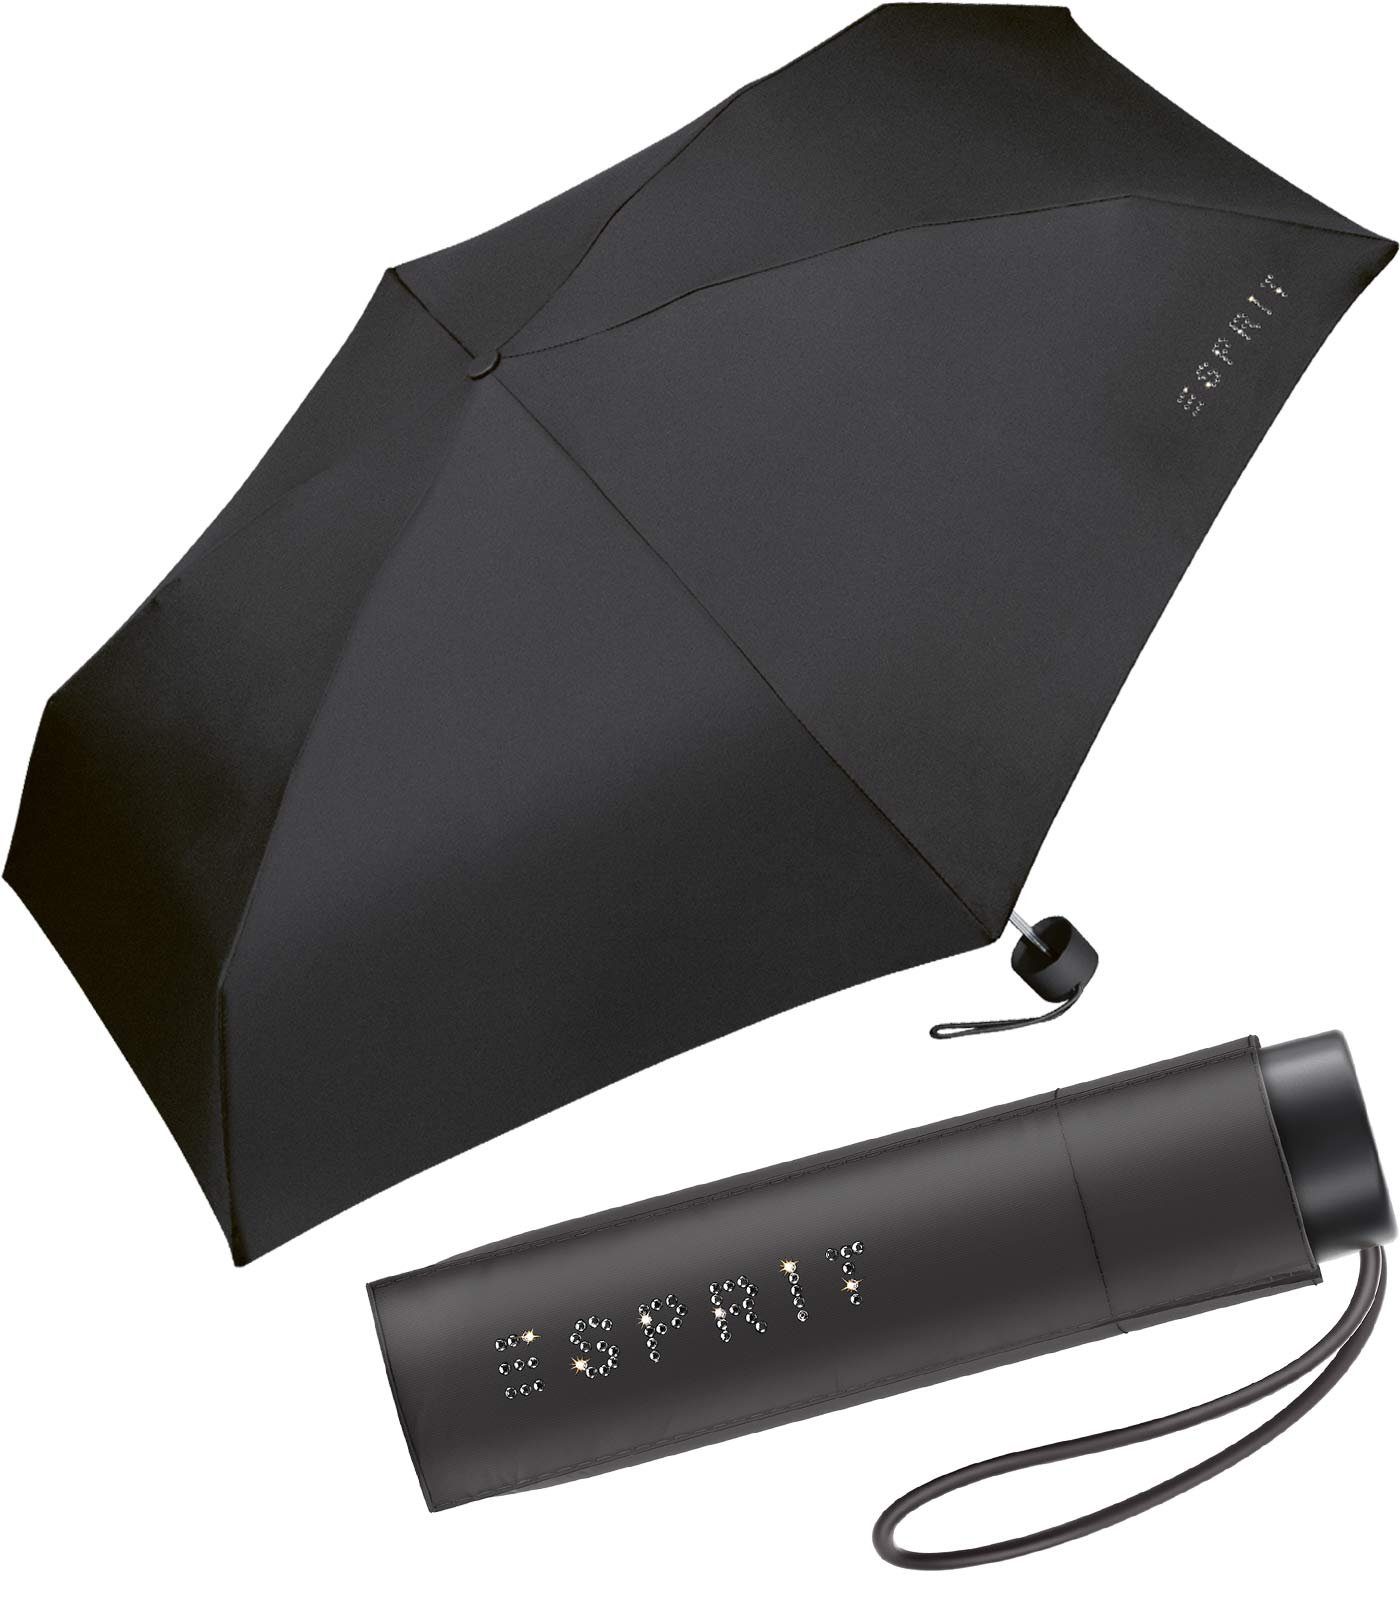 Esprit Langregenschirm Super Mini Schirm Petito sehr klein und leicht, winzig